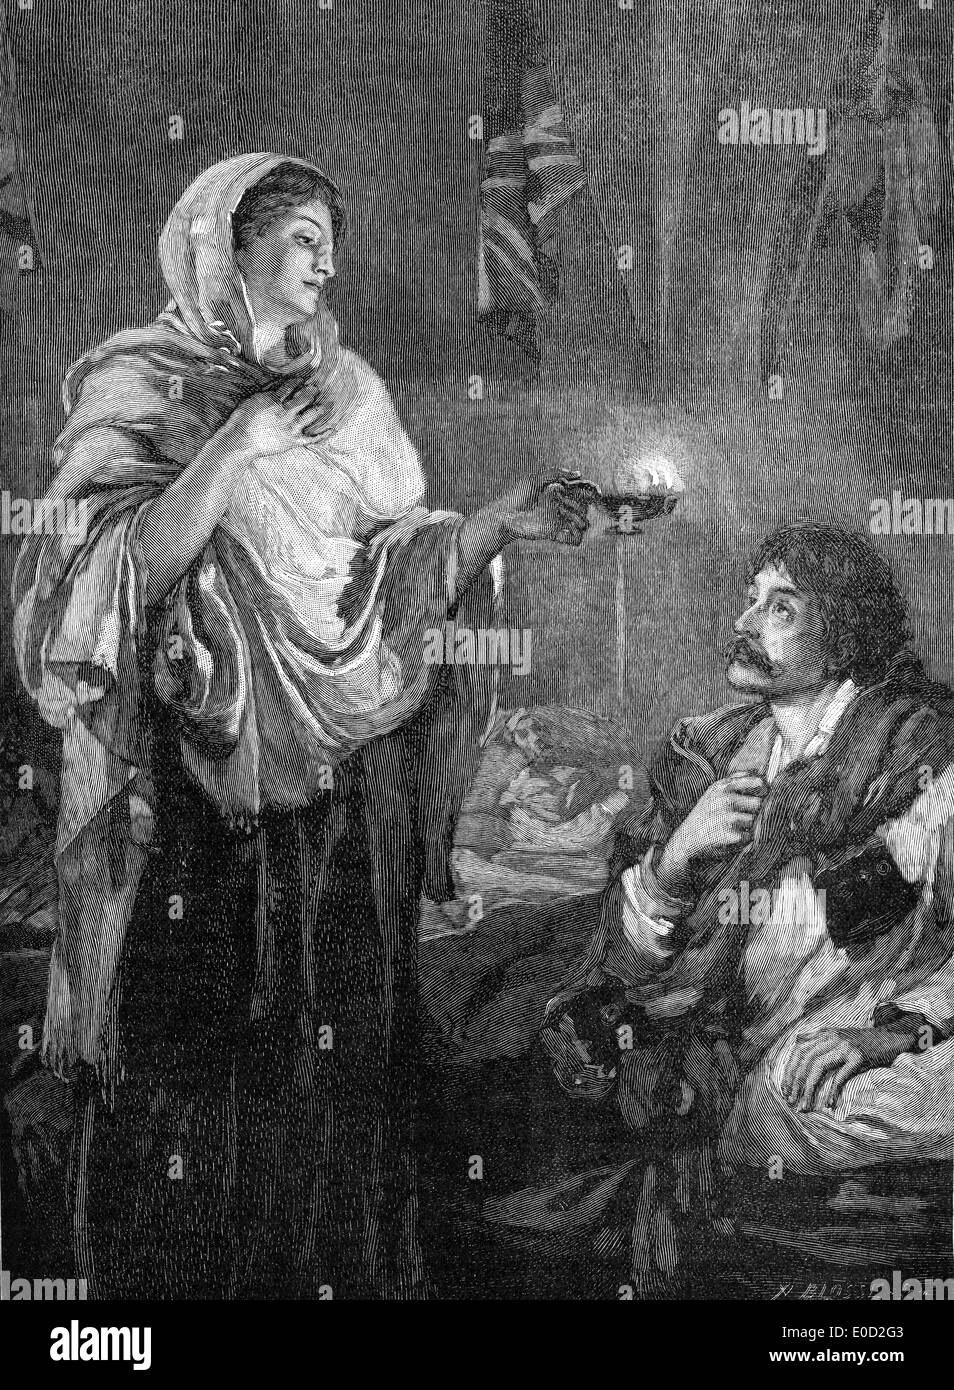 Florence Nightingale, 1820 - 1910, Inglese fondatore della moderna assistenza infermieristica, presso l'ospedale militare Selimiye caserme e la guerra in Crimea Foto Stock